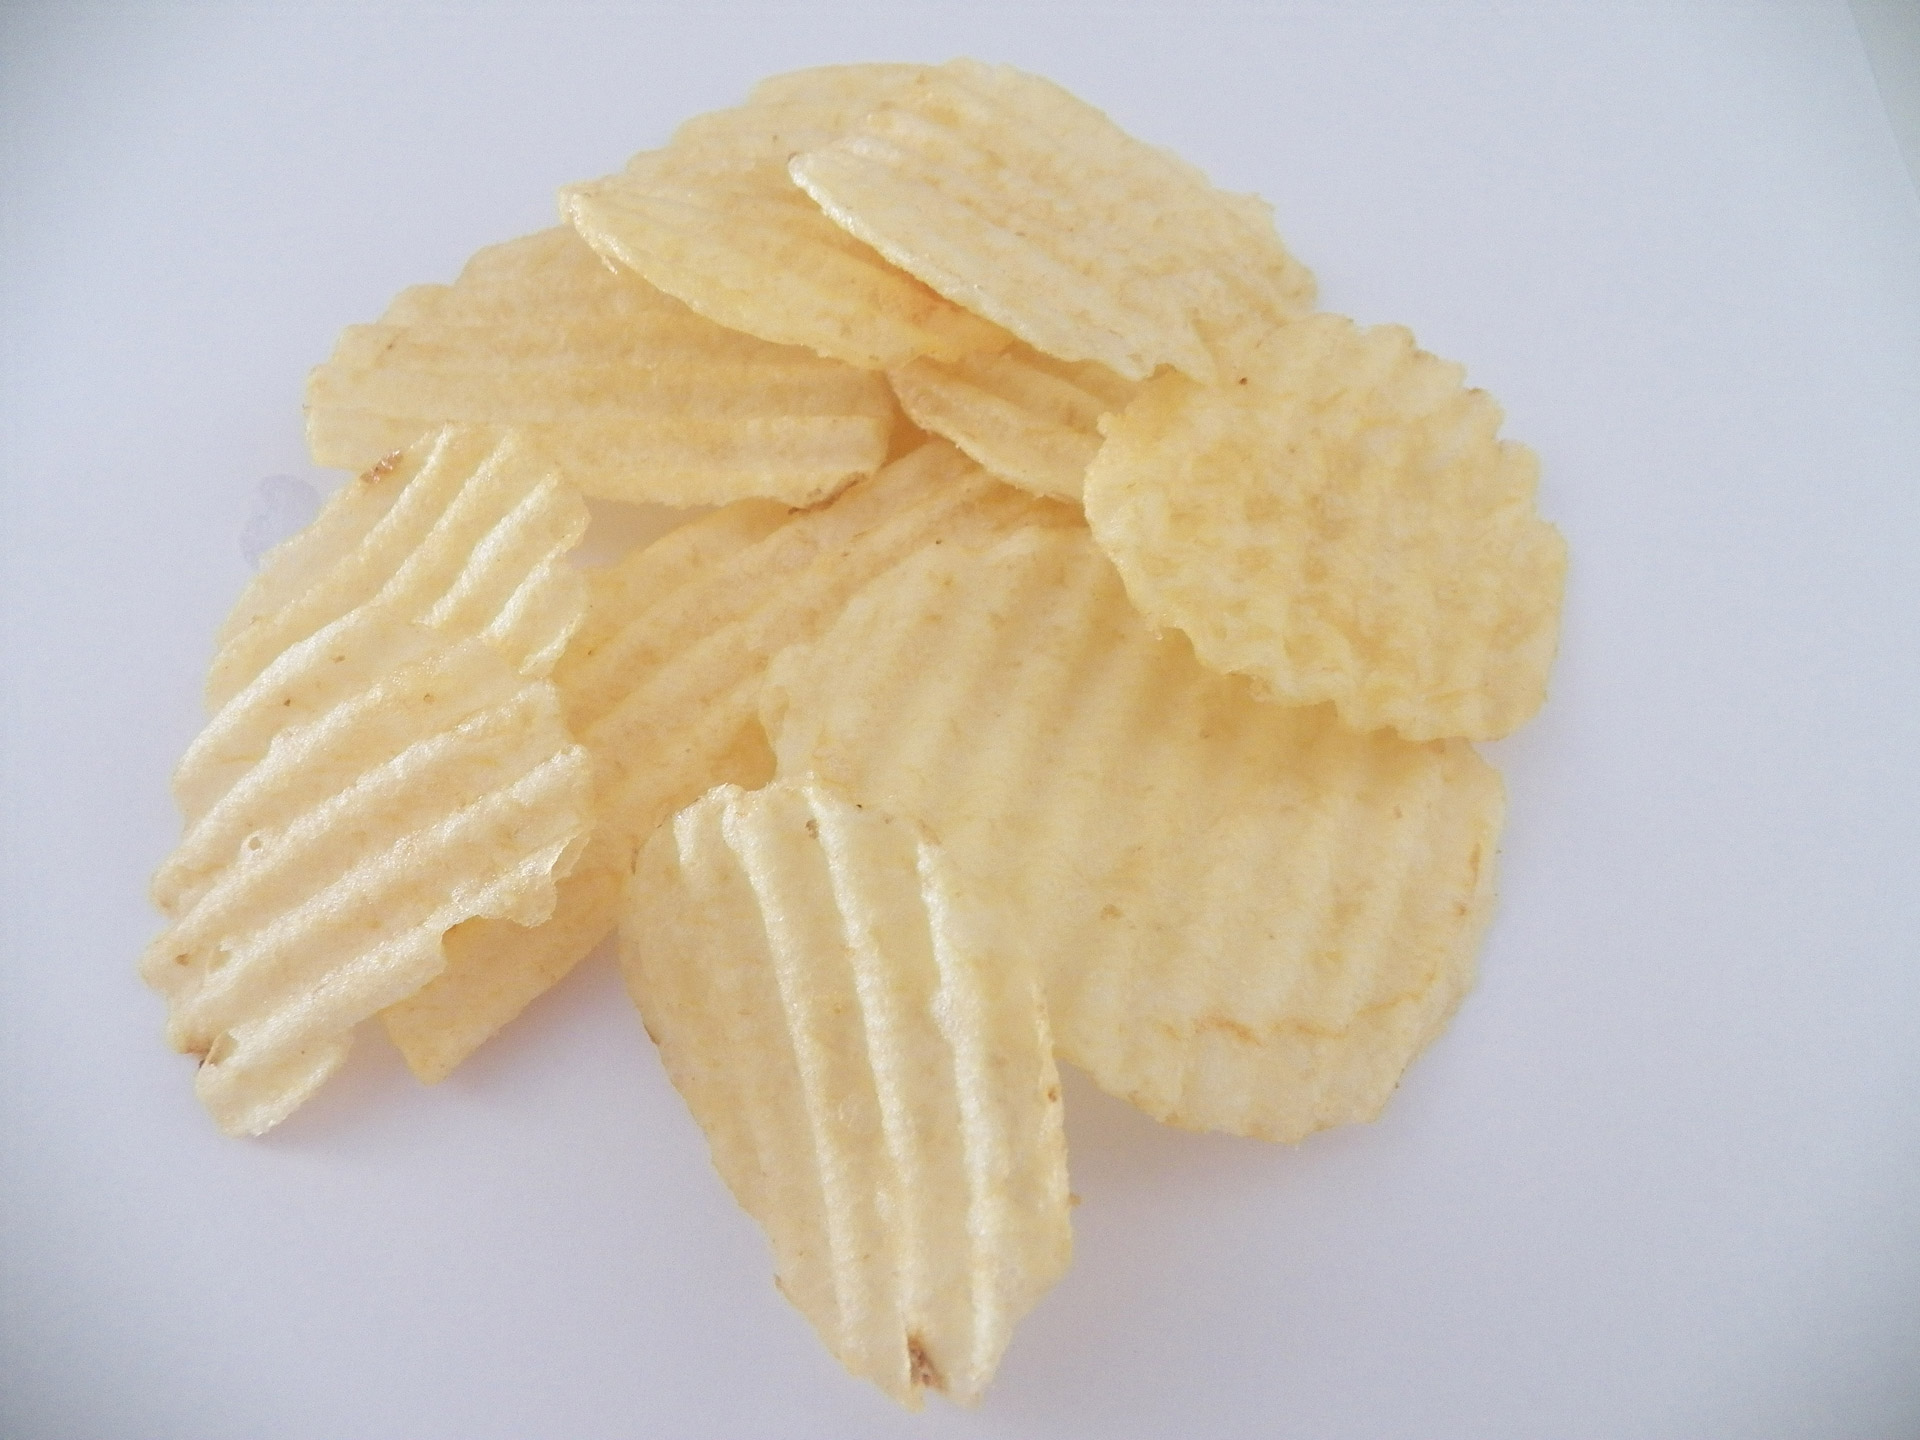 Potato Chips